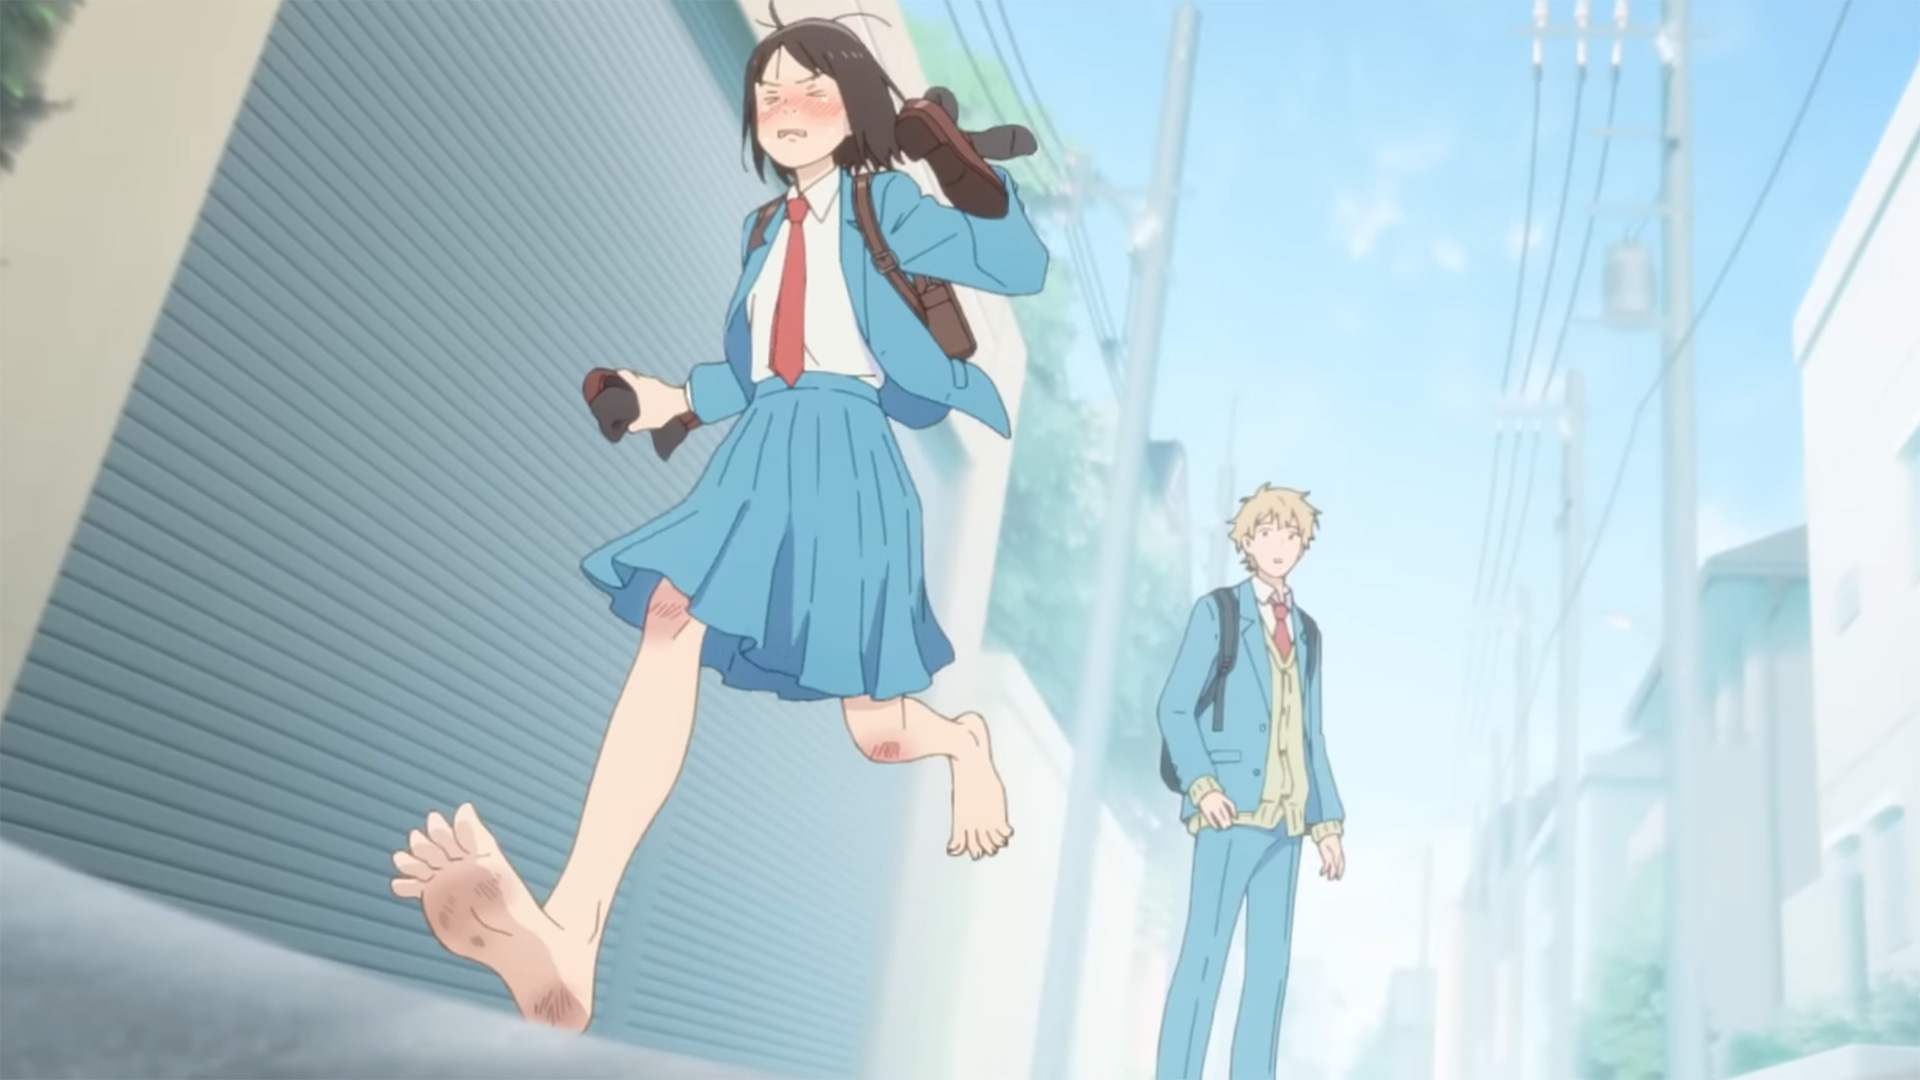 Skip to Loafer terá adaptação para anime - Anime United